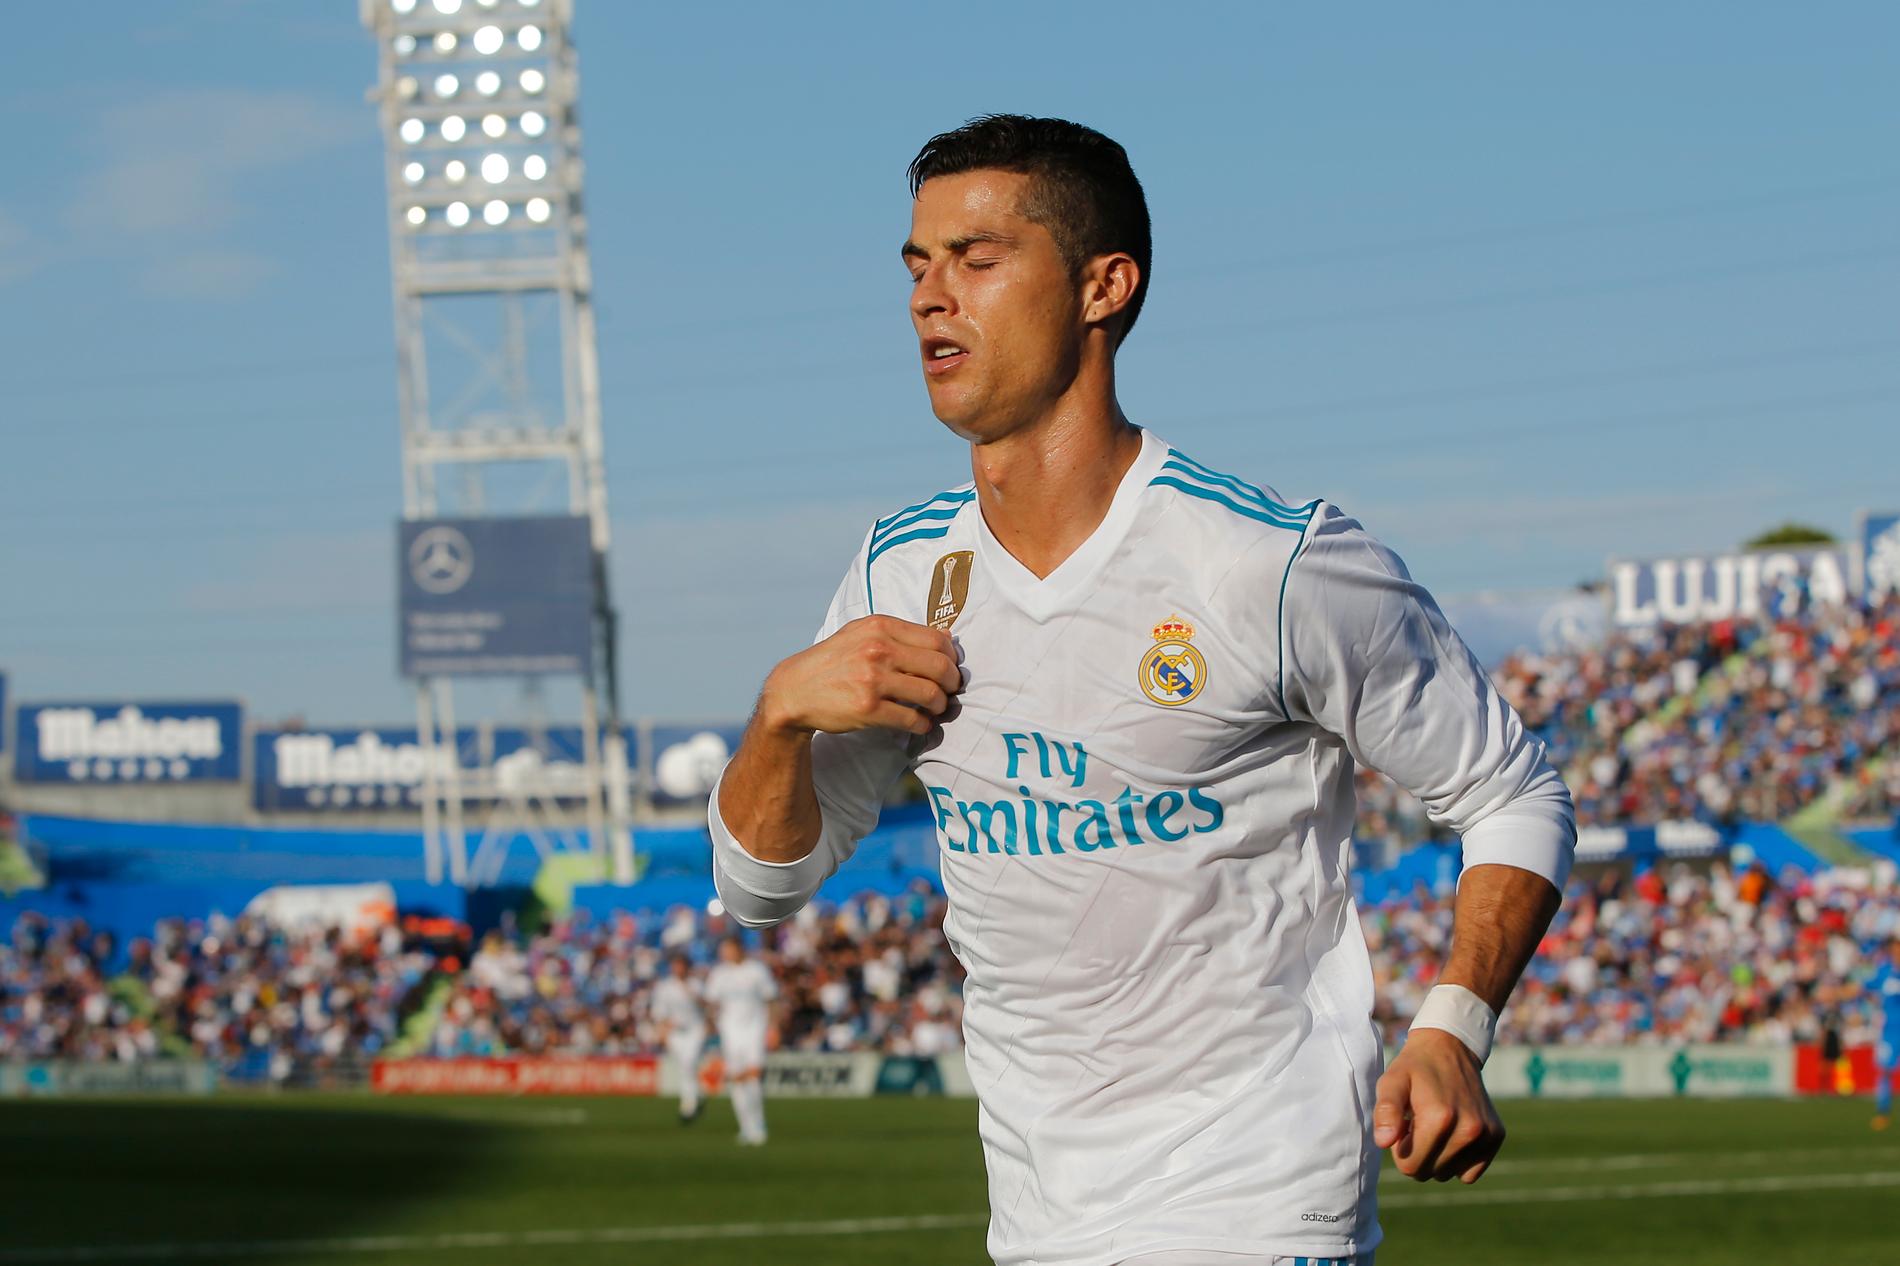 Ett sent mål gav stjärnan revansch – och Real Madrid tog tre poäng.